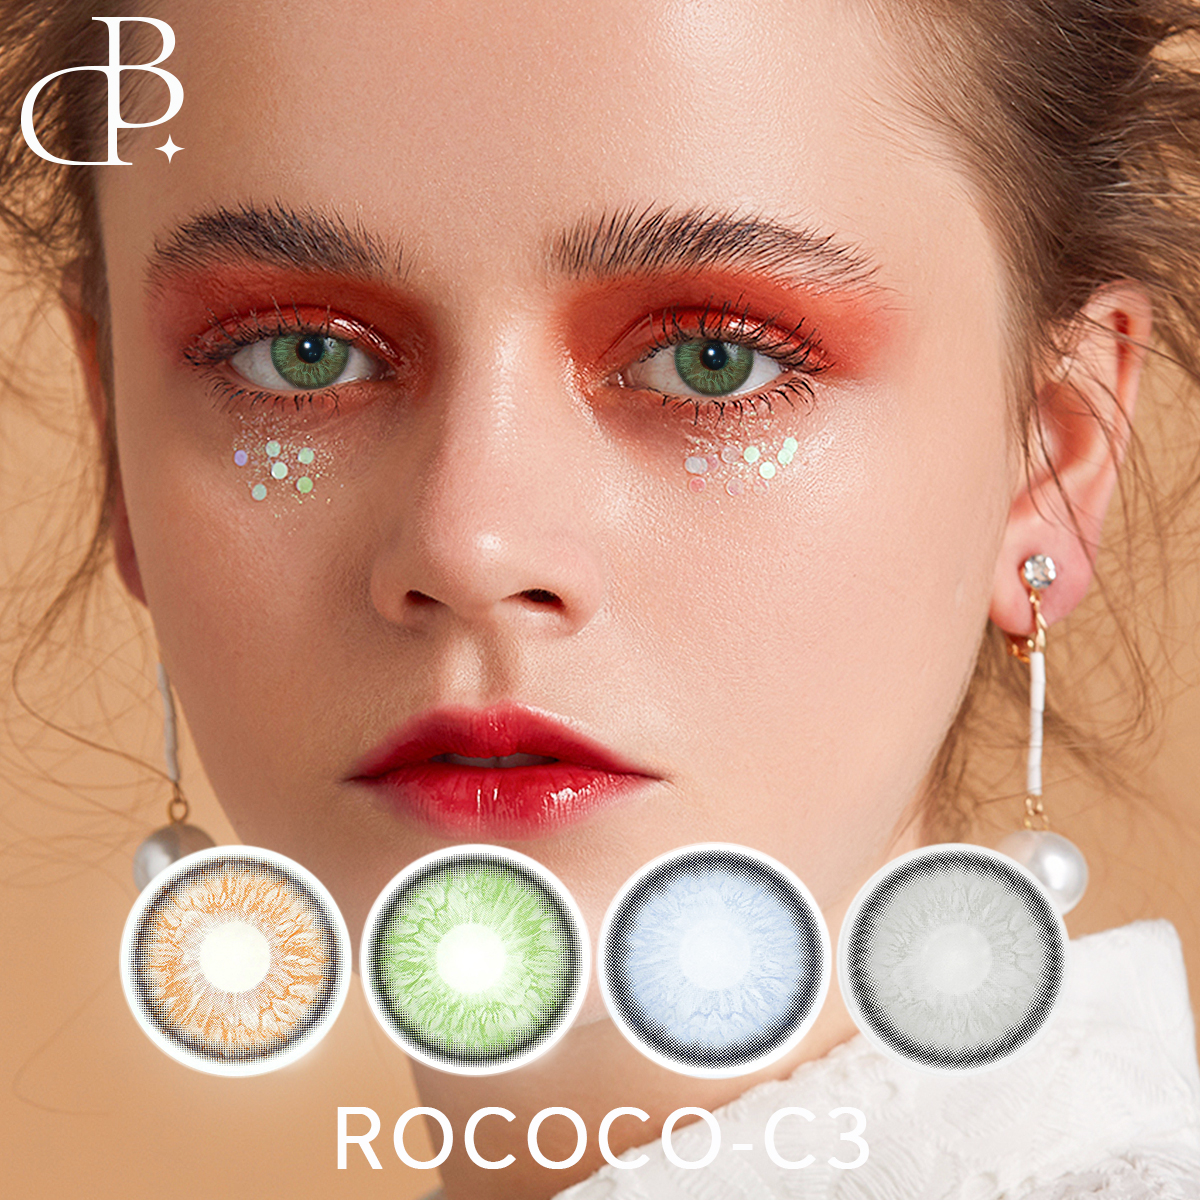 ROCOCO-3 rige 1 jier fabryk kleur lens graad kosmetyske kleurde each kontakt linzen mei doaze